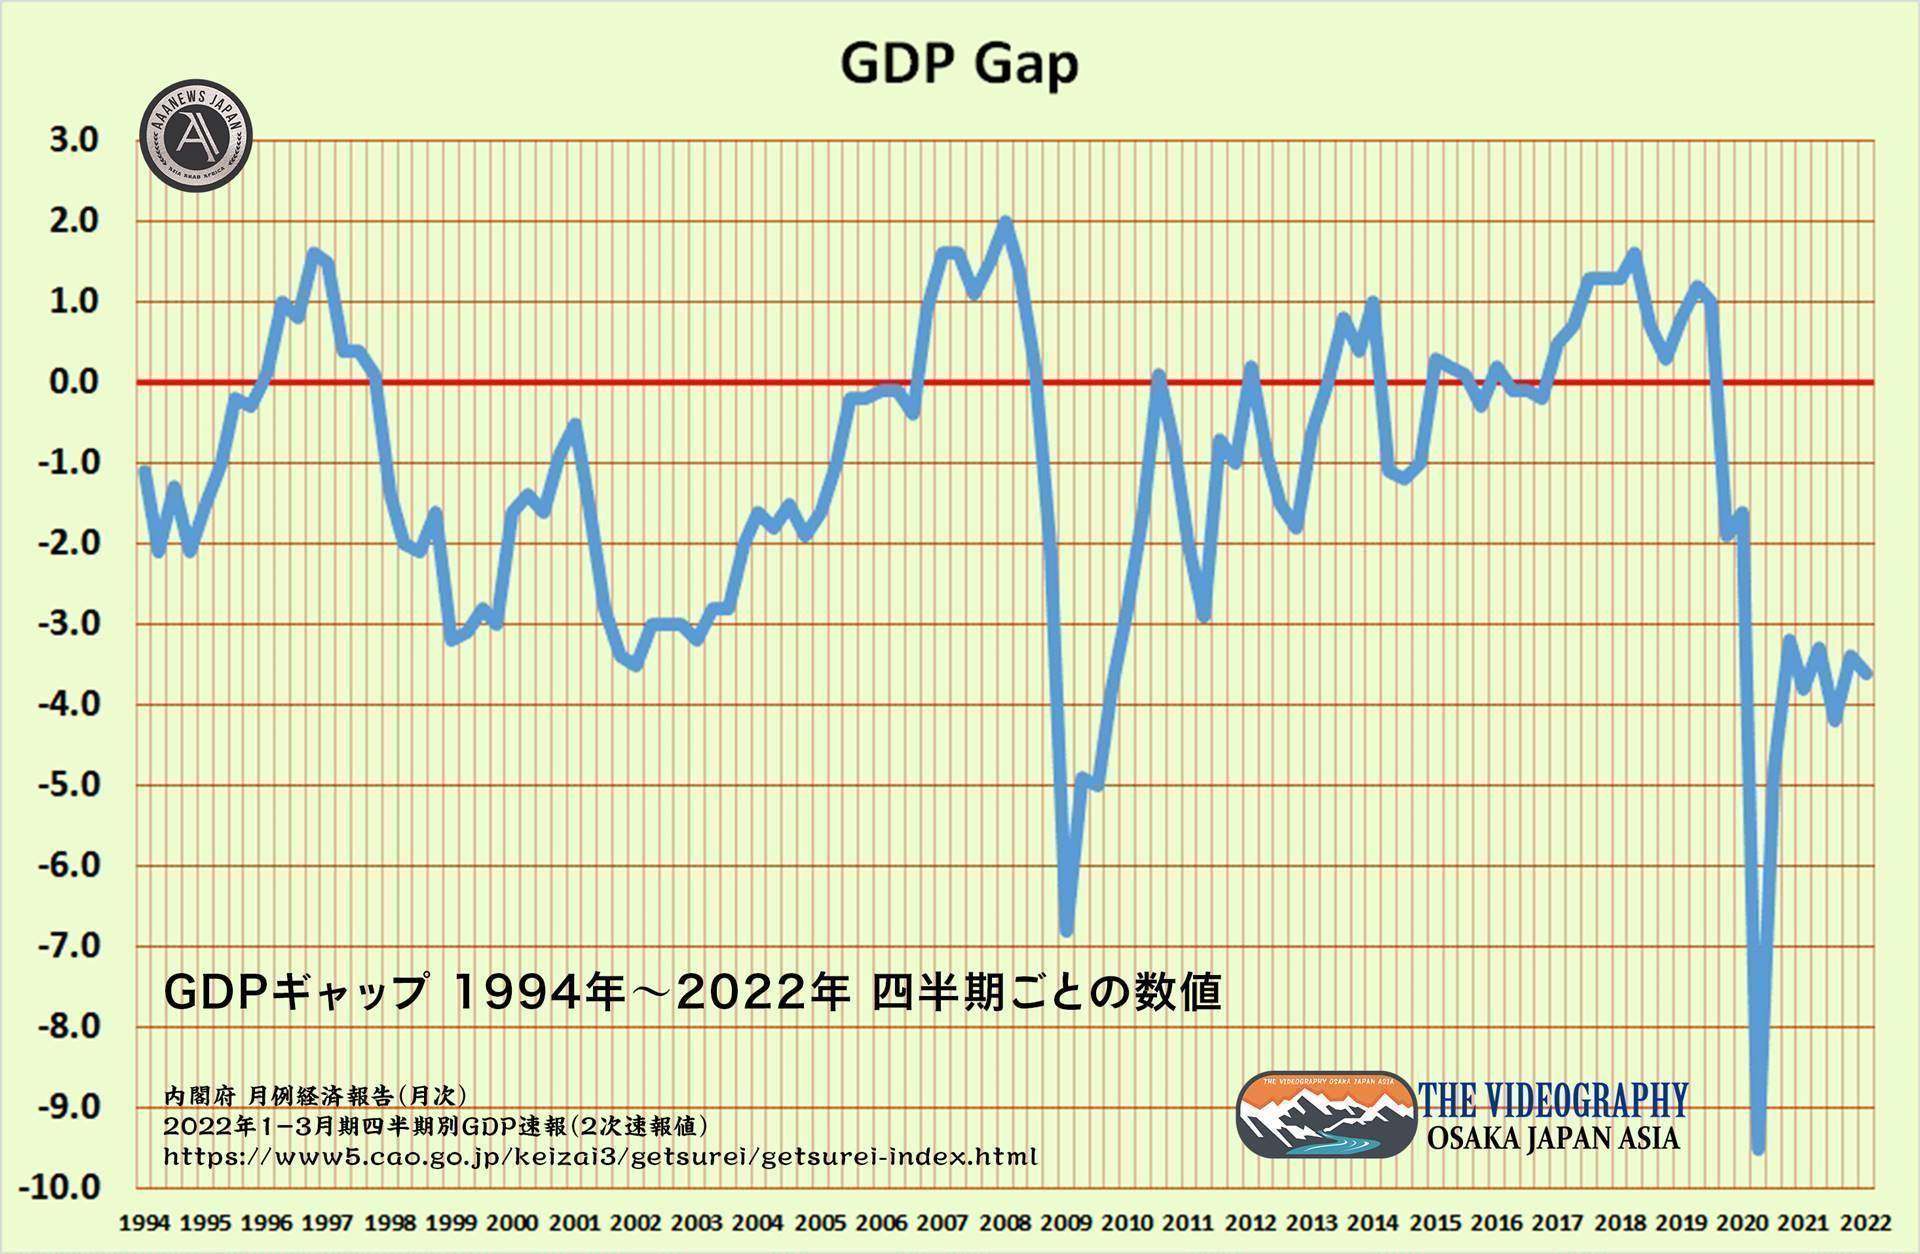 需給ギャップ GDPギャップ 2020 -1.6 Ⅱ -9.5 Ⅲ -4.8 Ⅳ -3.2 2021 -3.8 Ⅱ -3.3 Ⅲ -4.2 Ⅳ -3.4 2022 -3.6